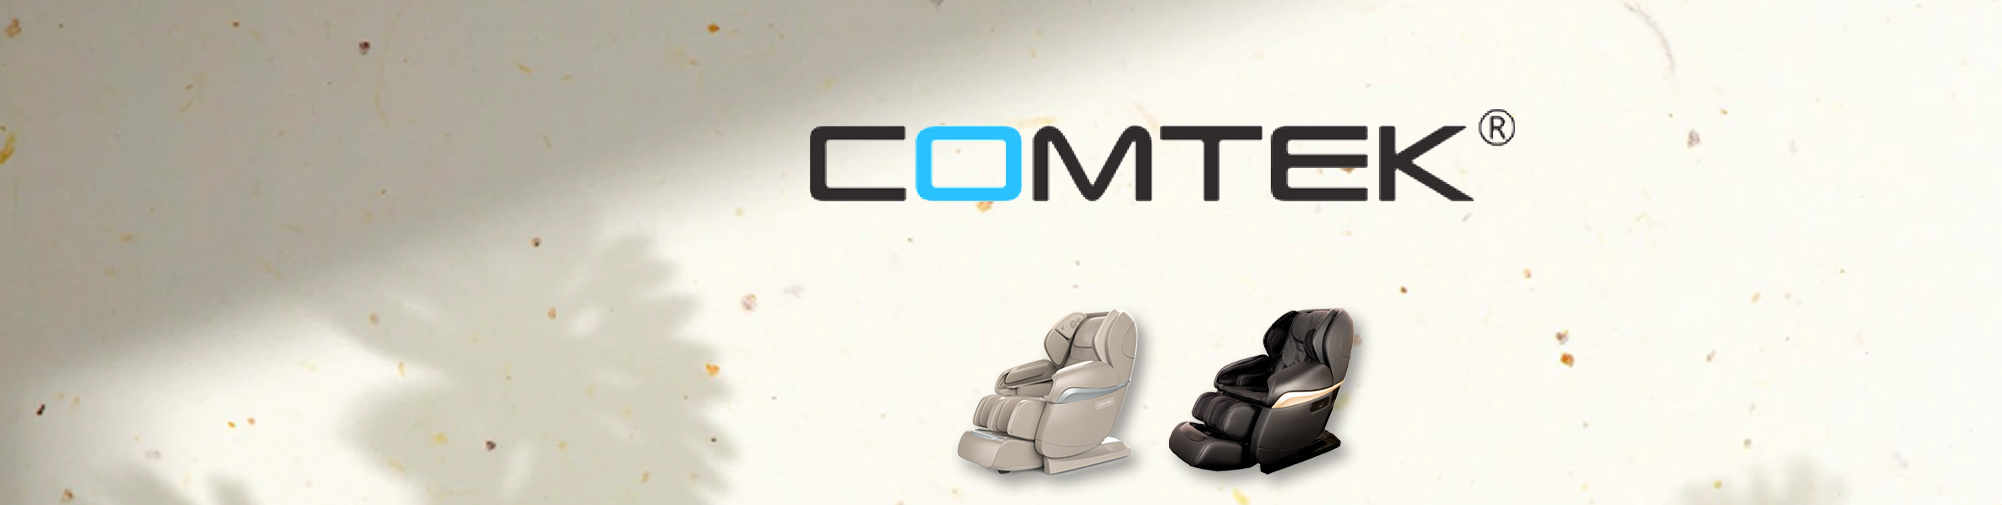 COMTEK - nhà sản xuất ban đầu chuyên nghiệp | Thế giới ghế massage